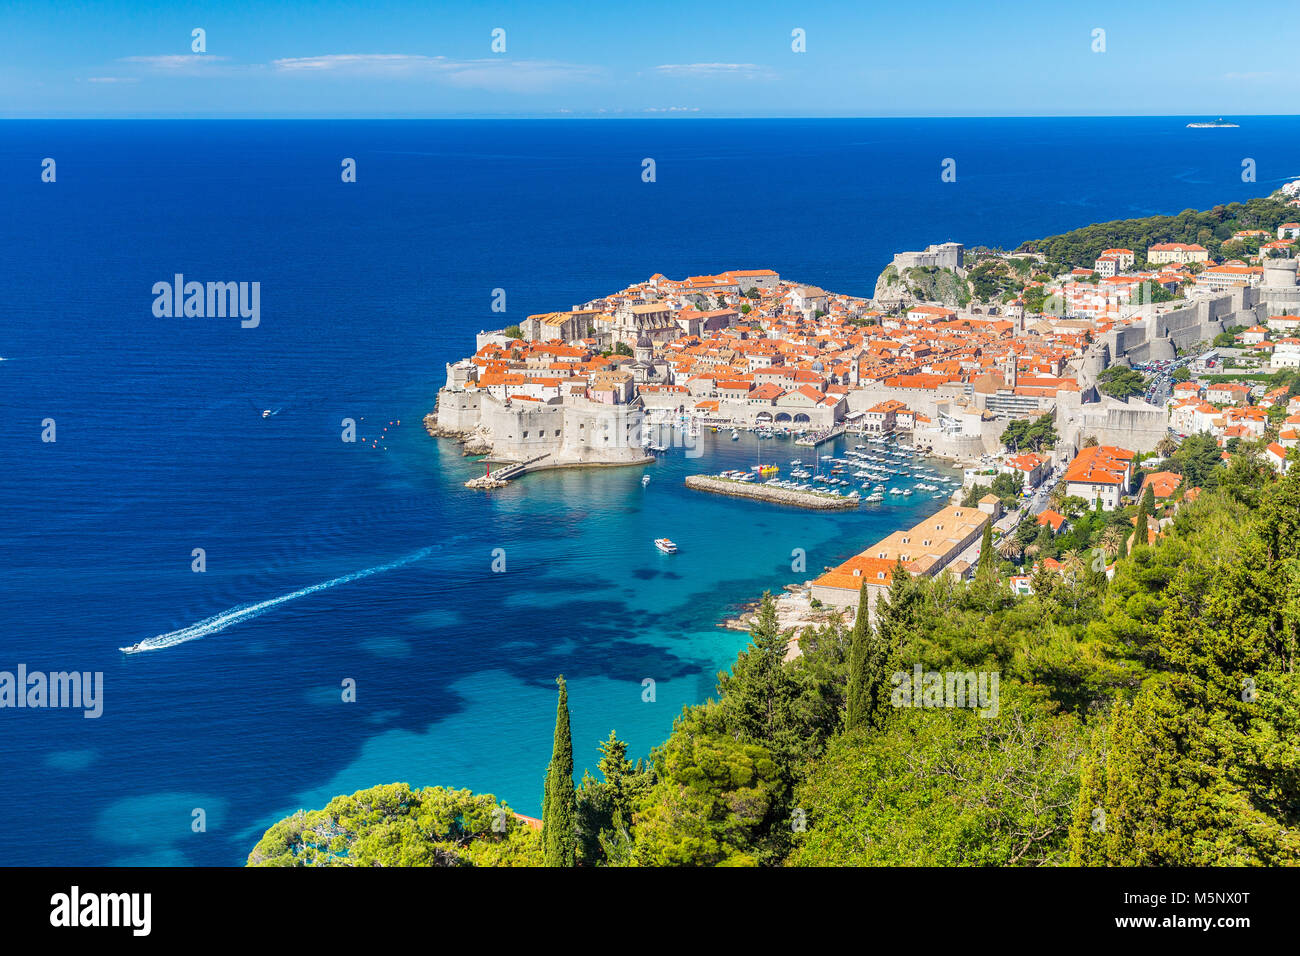 Historische Altstadt von Dubrovnik, eines der bekanntesten touristischen Destinationen im Mittelmeer, von Srd Berg an einem sonnigen Tag im Sommer, Kroatien Stockfoto